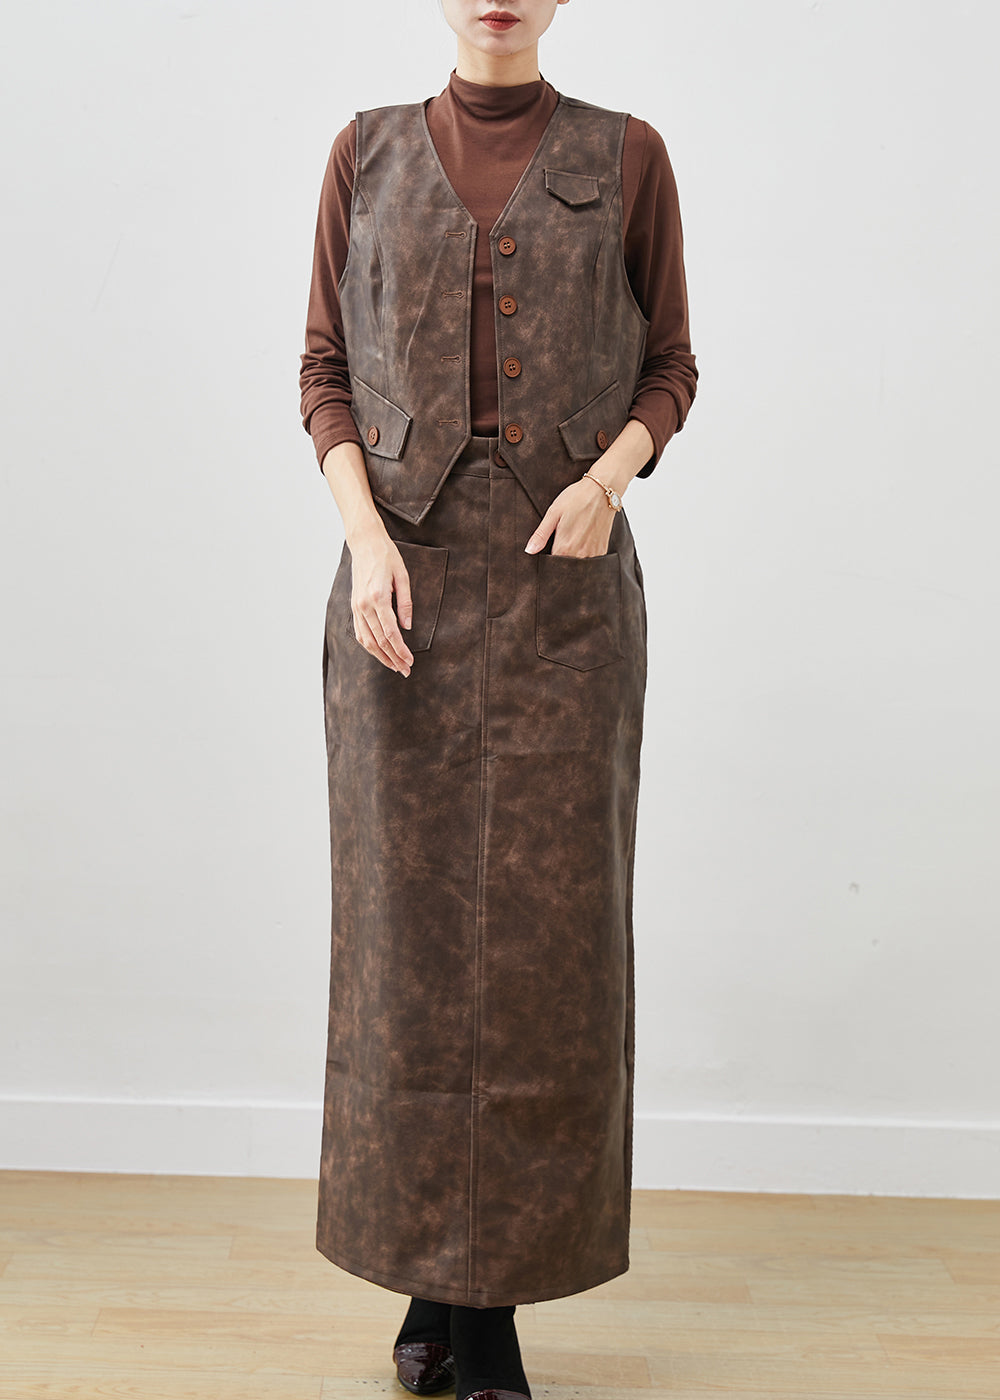 Bohemian Khaki Tie Dye Faux Leather Two Piece Set Women Clothing Winter